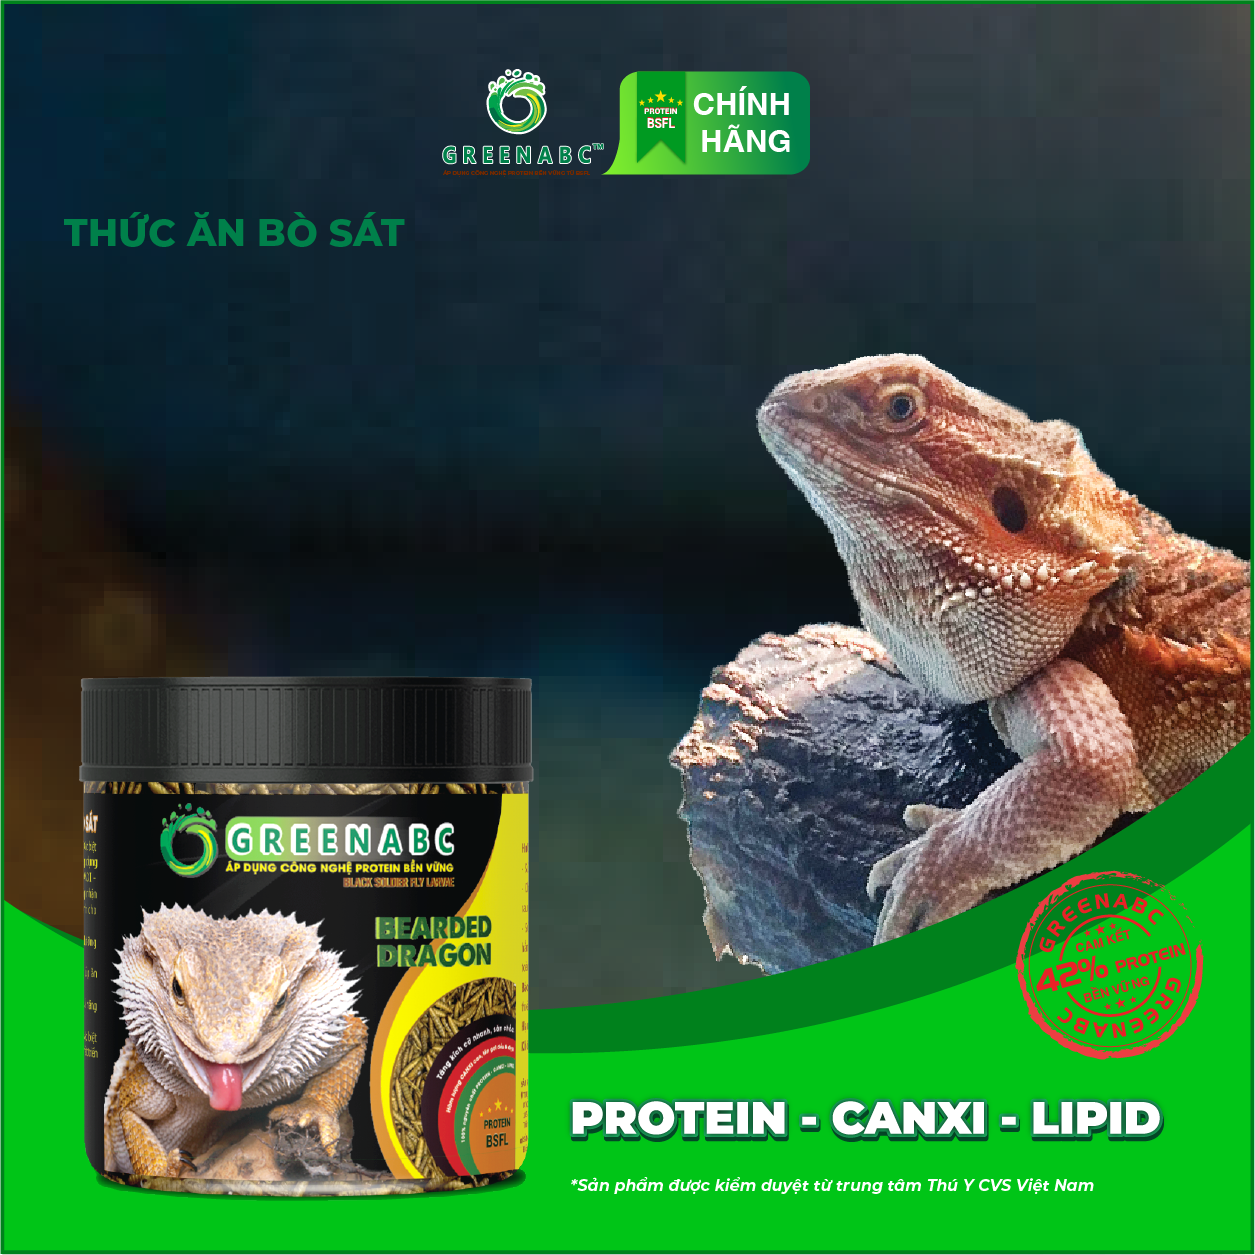 Thức ăn bò sát Rồng Úc GREENABC - Bearded Dragon – Hàm lượng protein 44.9% giúp tăng trưởng nhanh, lên màu đẹp, phát triển toàn diện – Hộp 68g